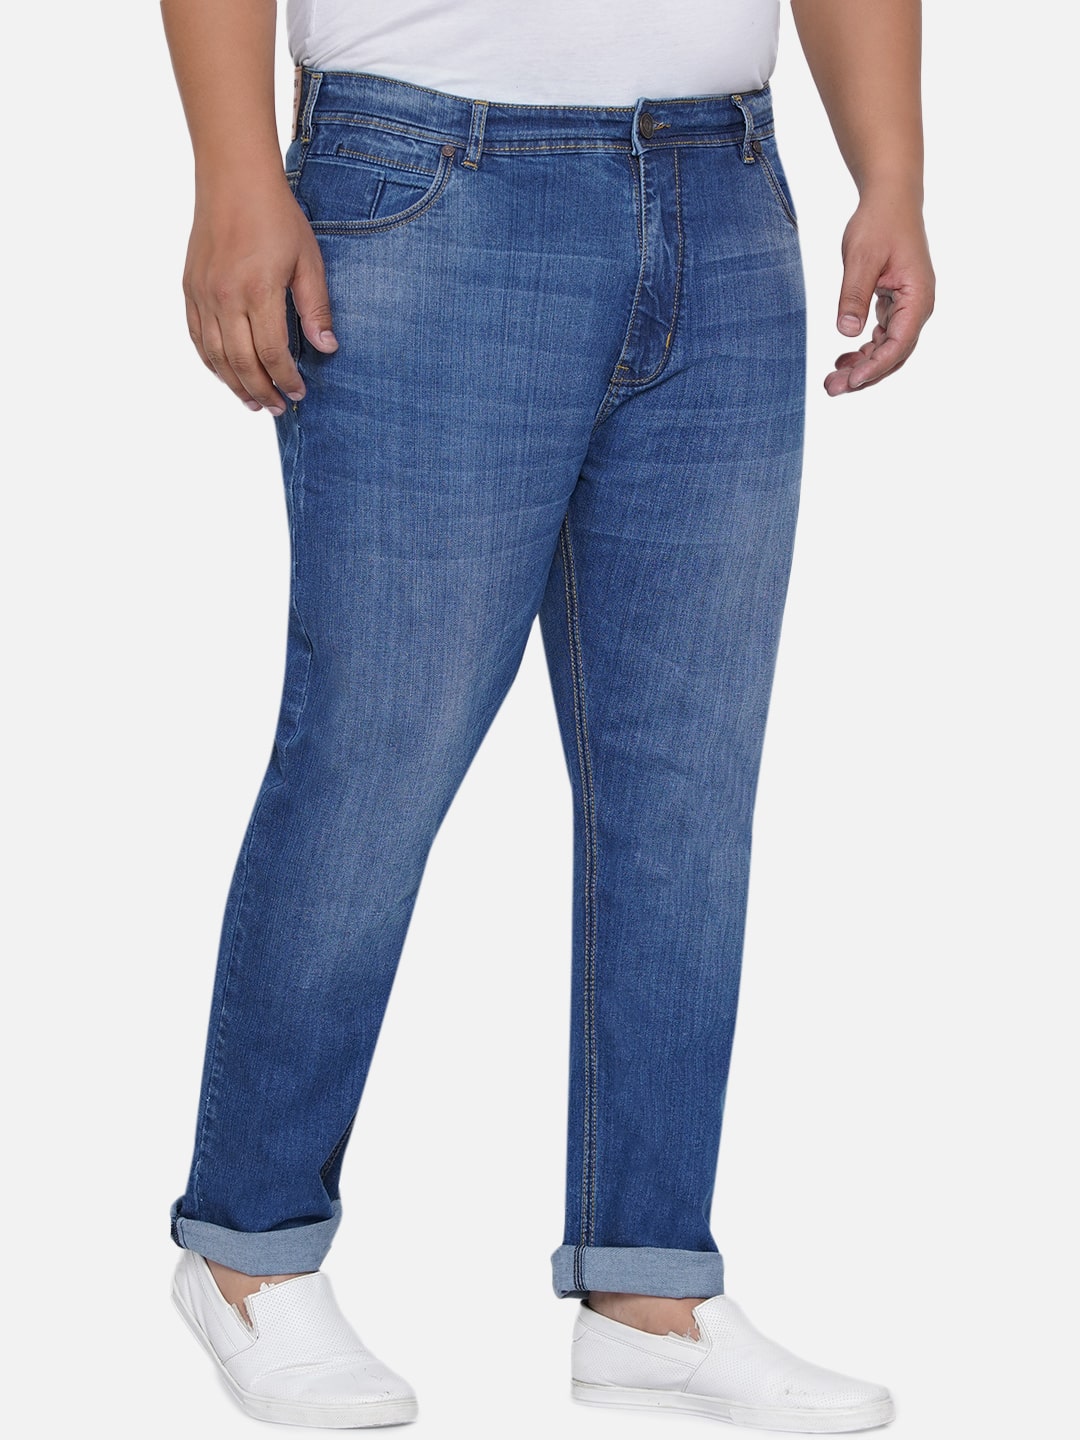 bottomwear/jeans/EJPJ25012/ejpj25012-3.jpg